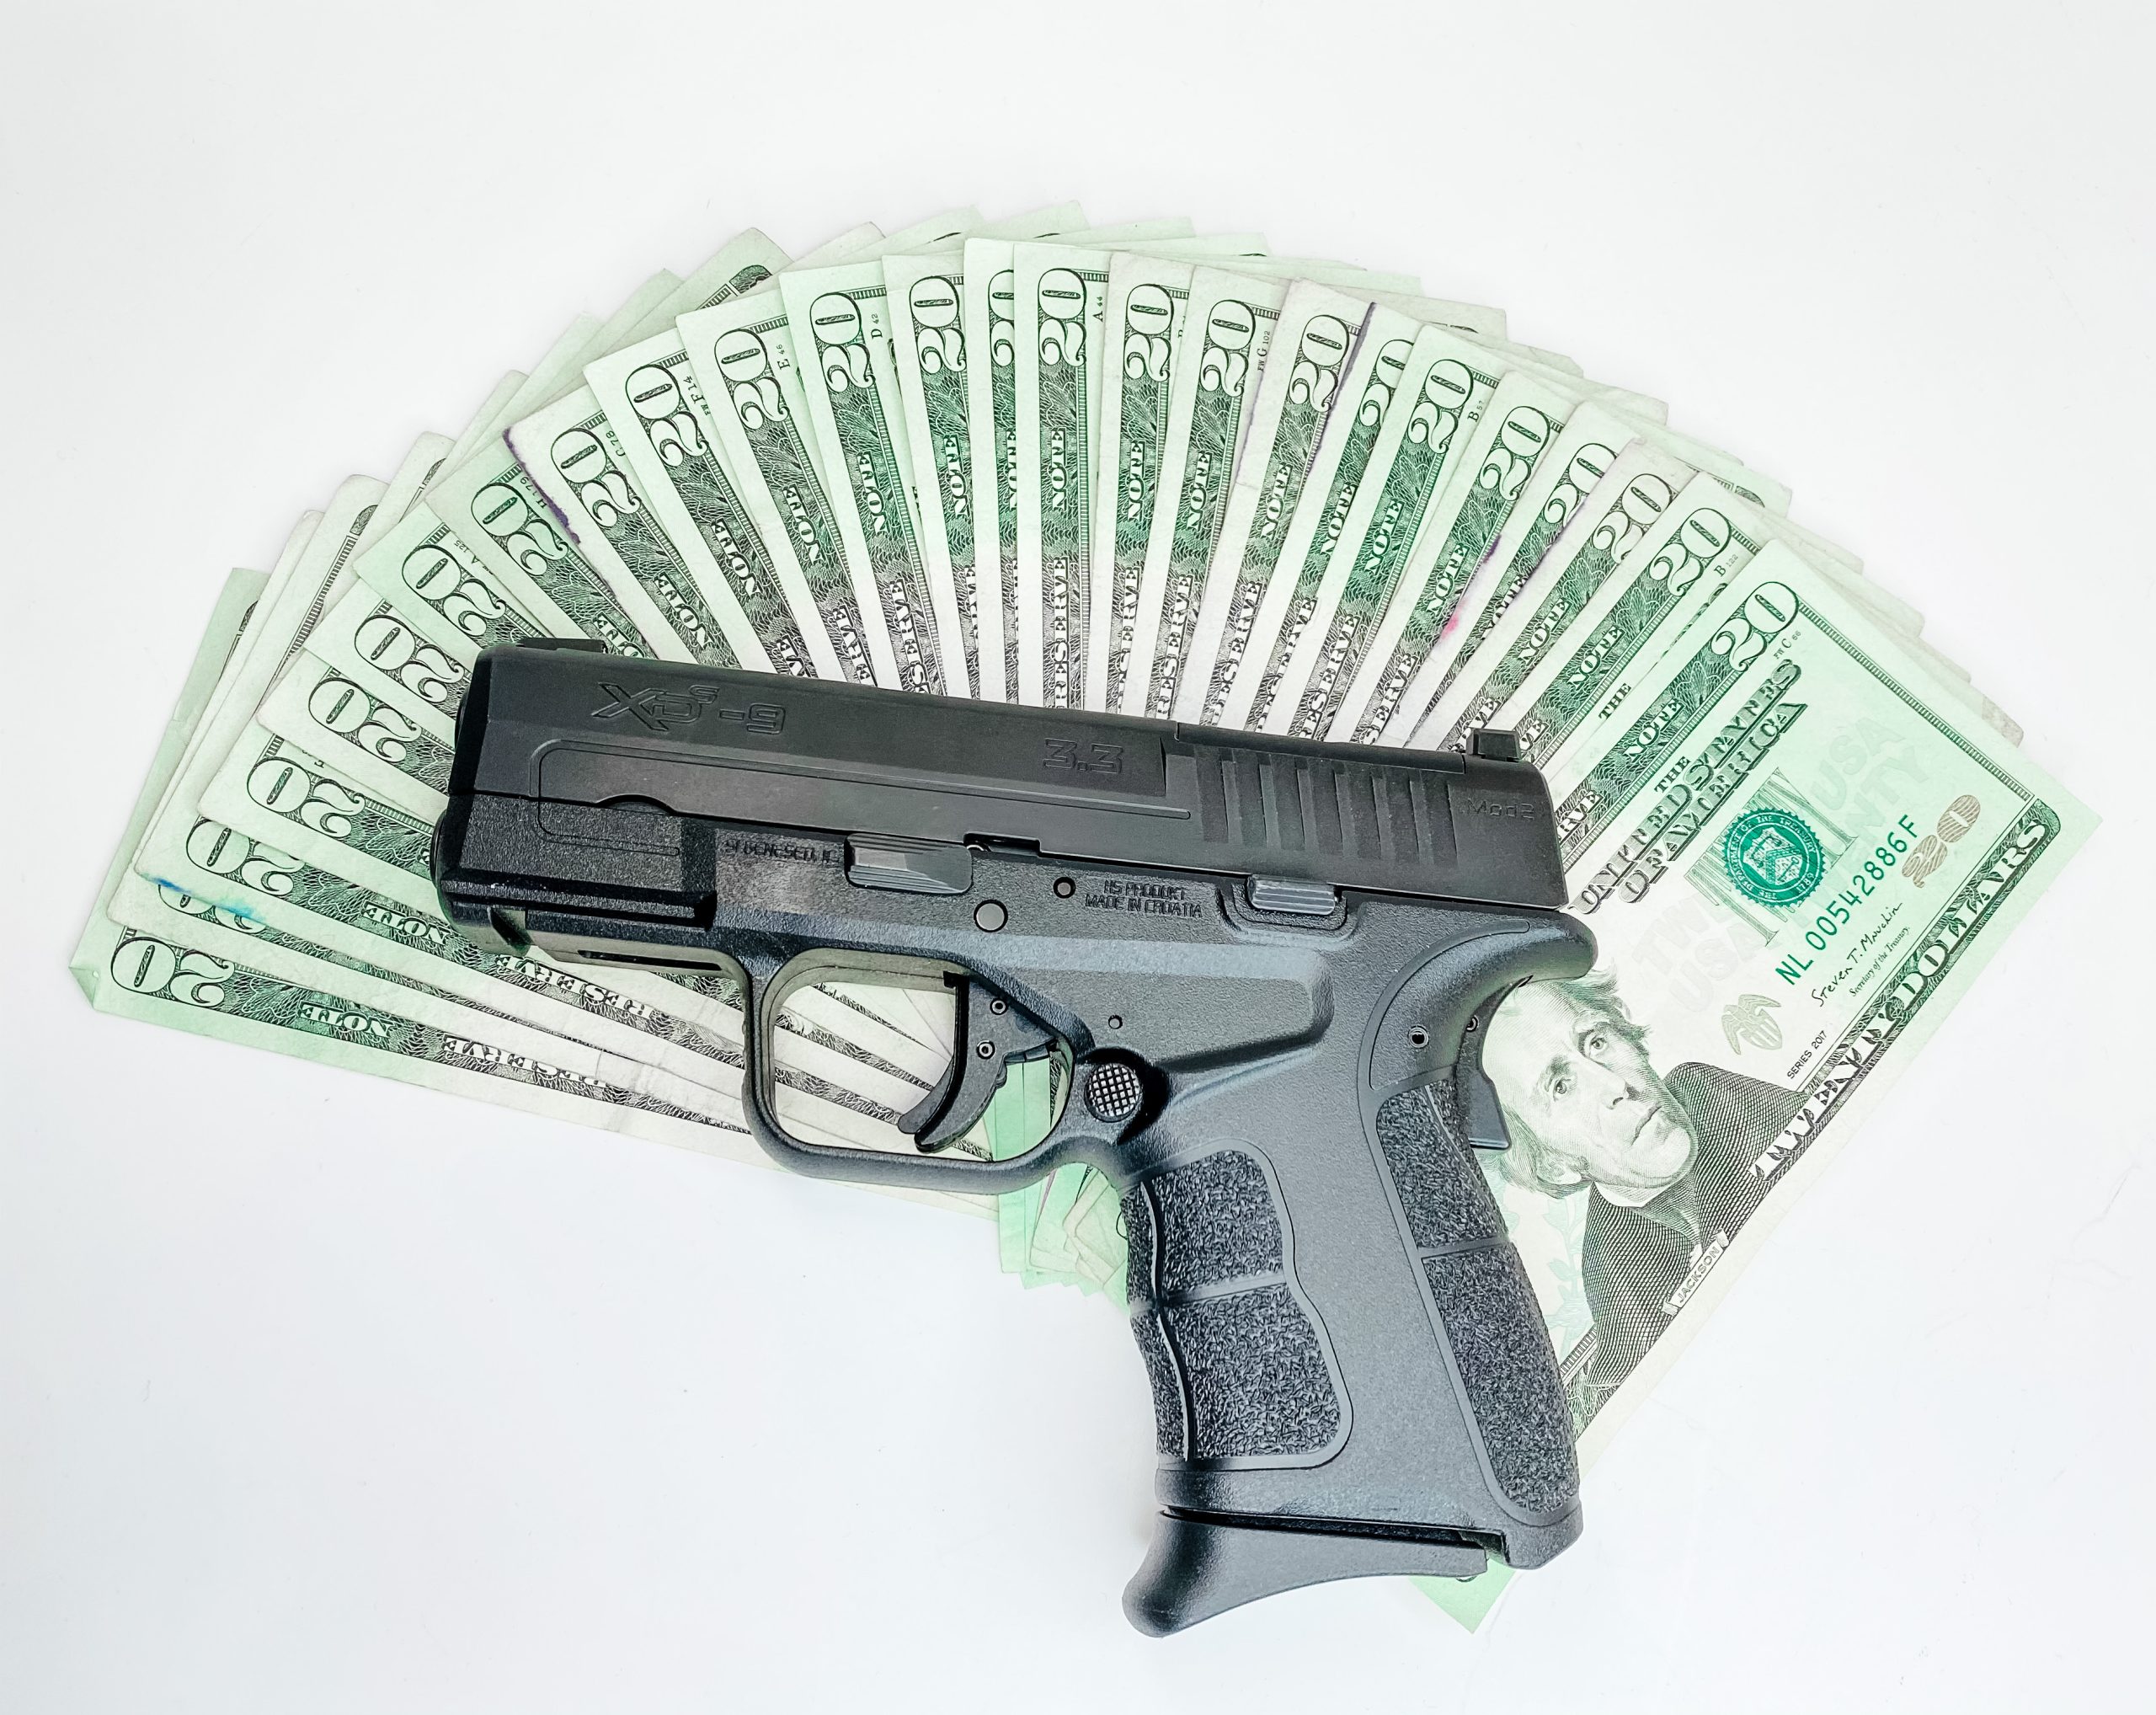 Phoenix Pawn & Guns Pawn Handguns for a 90 day cash loan